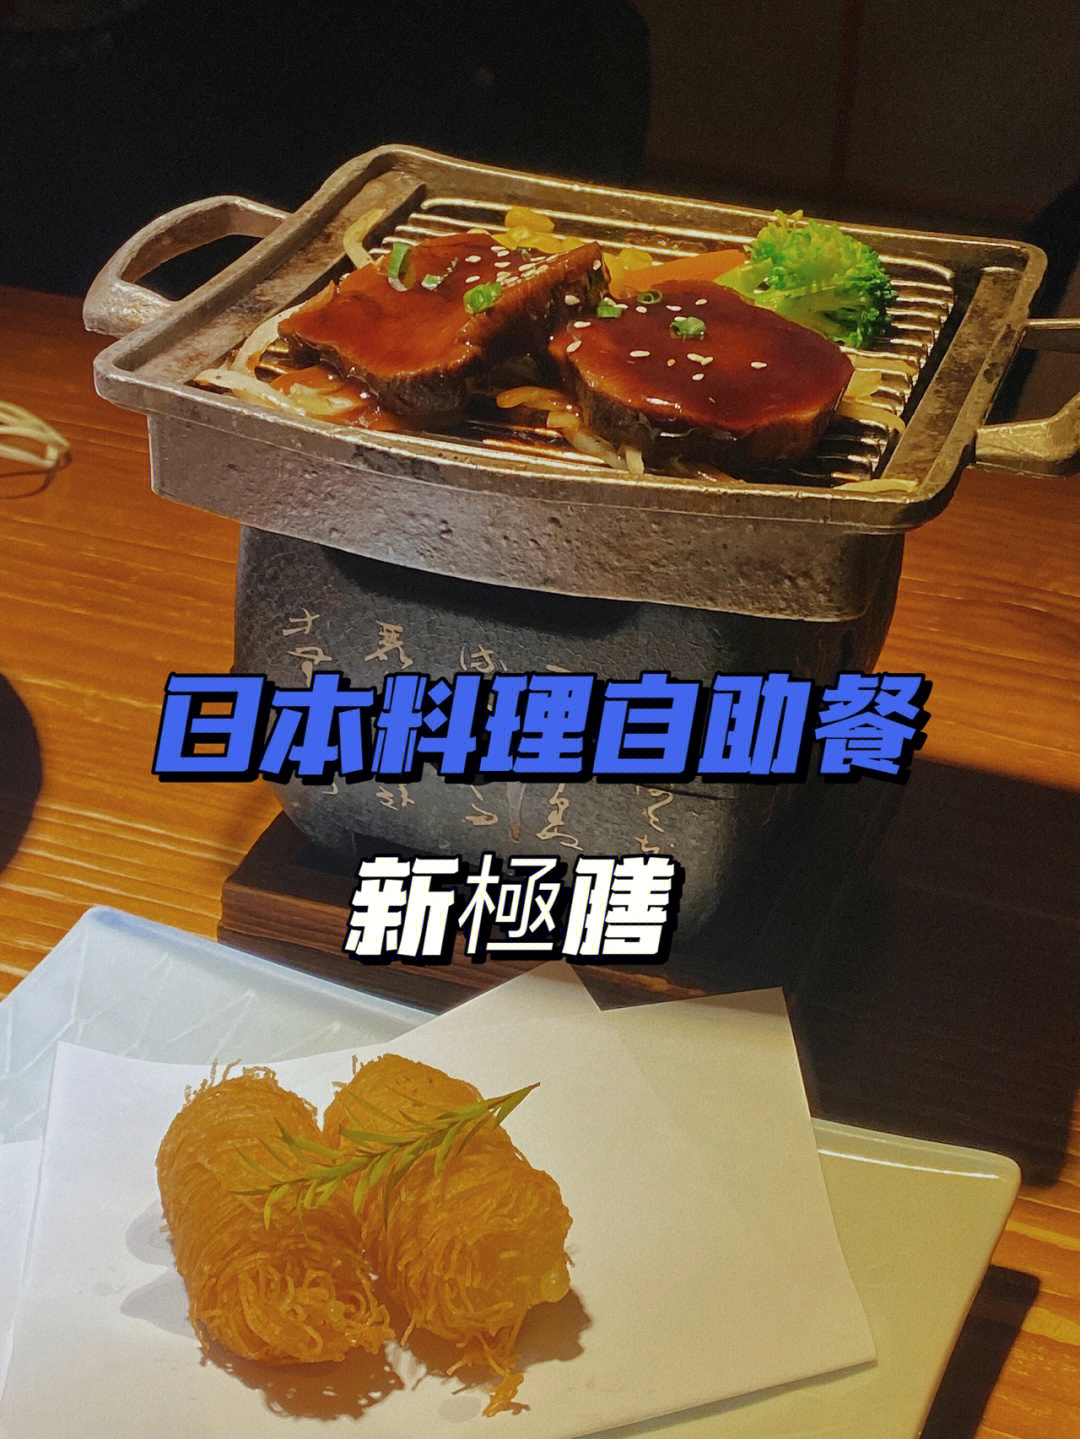 日本料理自助餐_福州世欧王庄日本自助料理_日本麦当劳自助点餐机